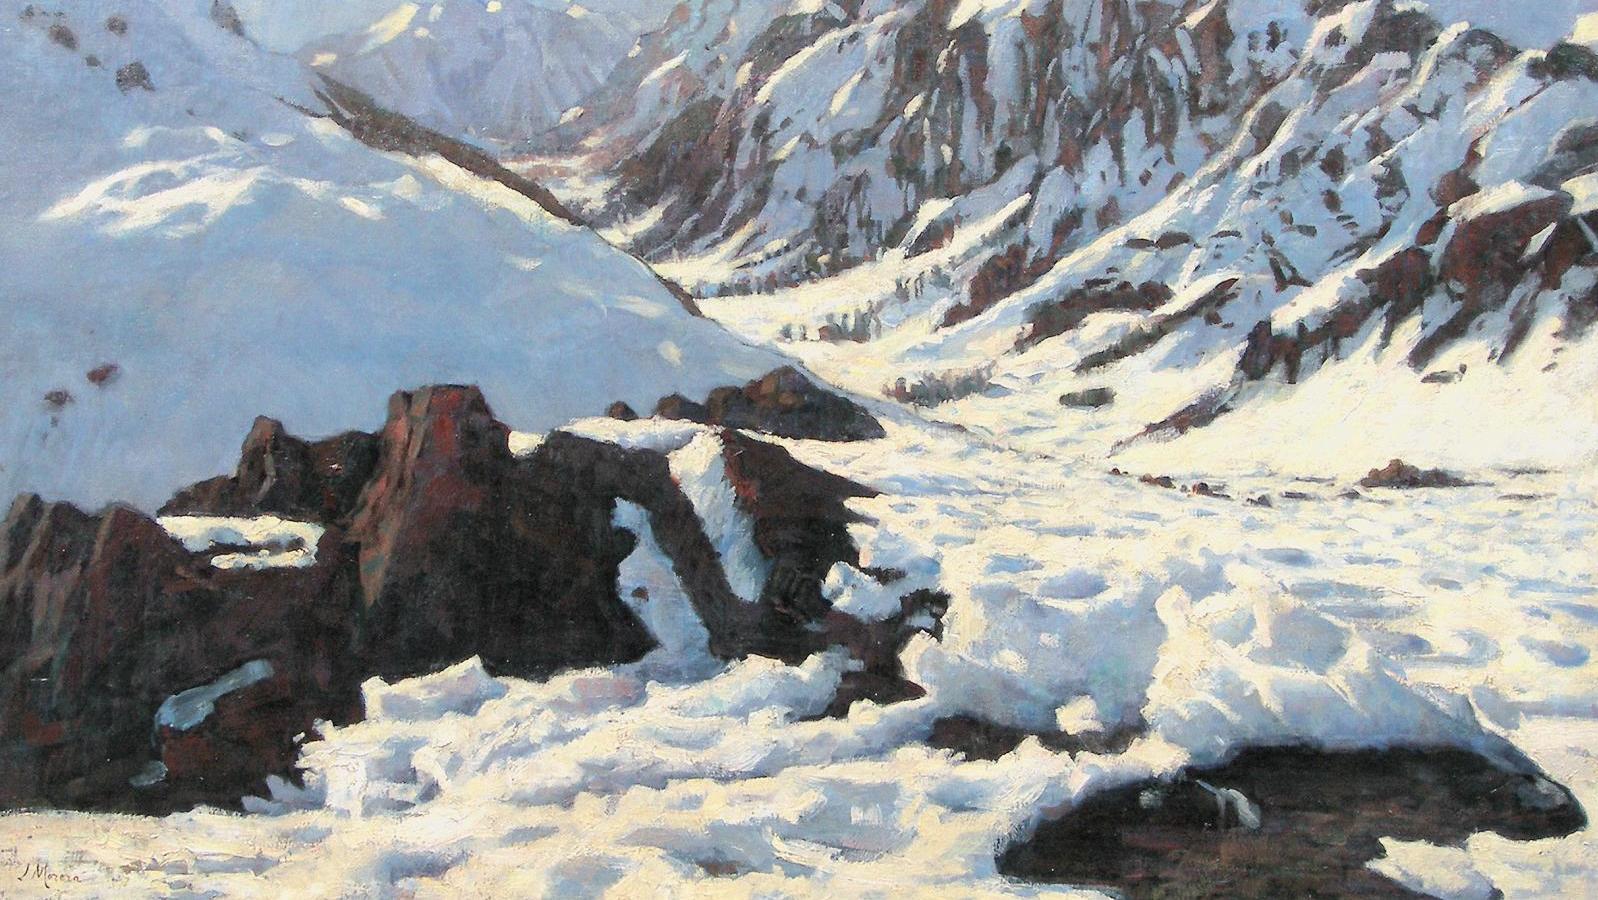 2 520 €Jaime Morera y Galicia (1854-1927), Paysage de neige, huile sur toile signée,... Les paysages de neige